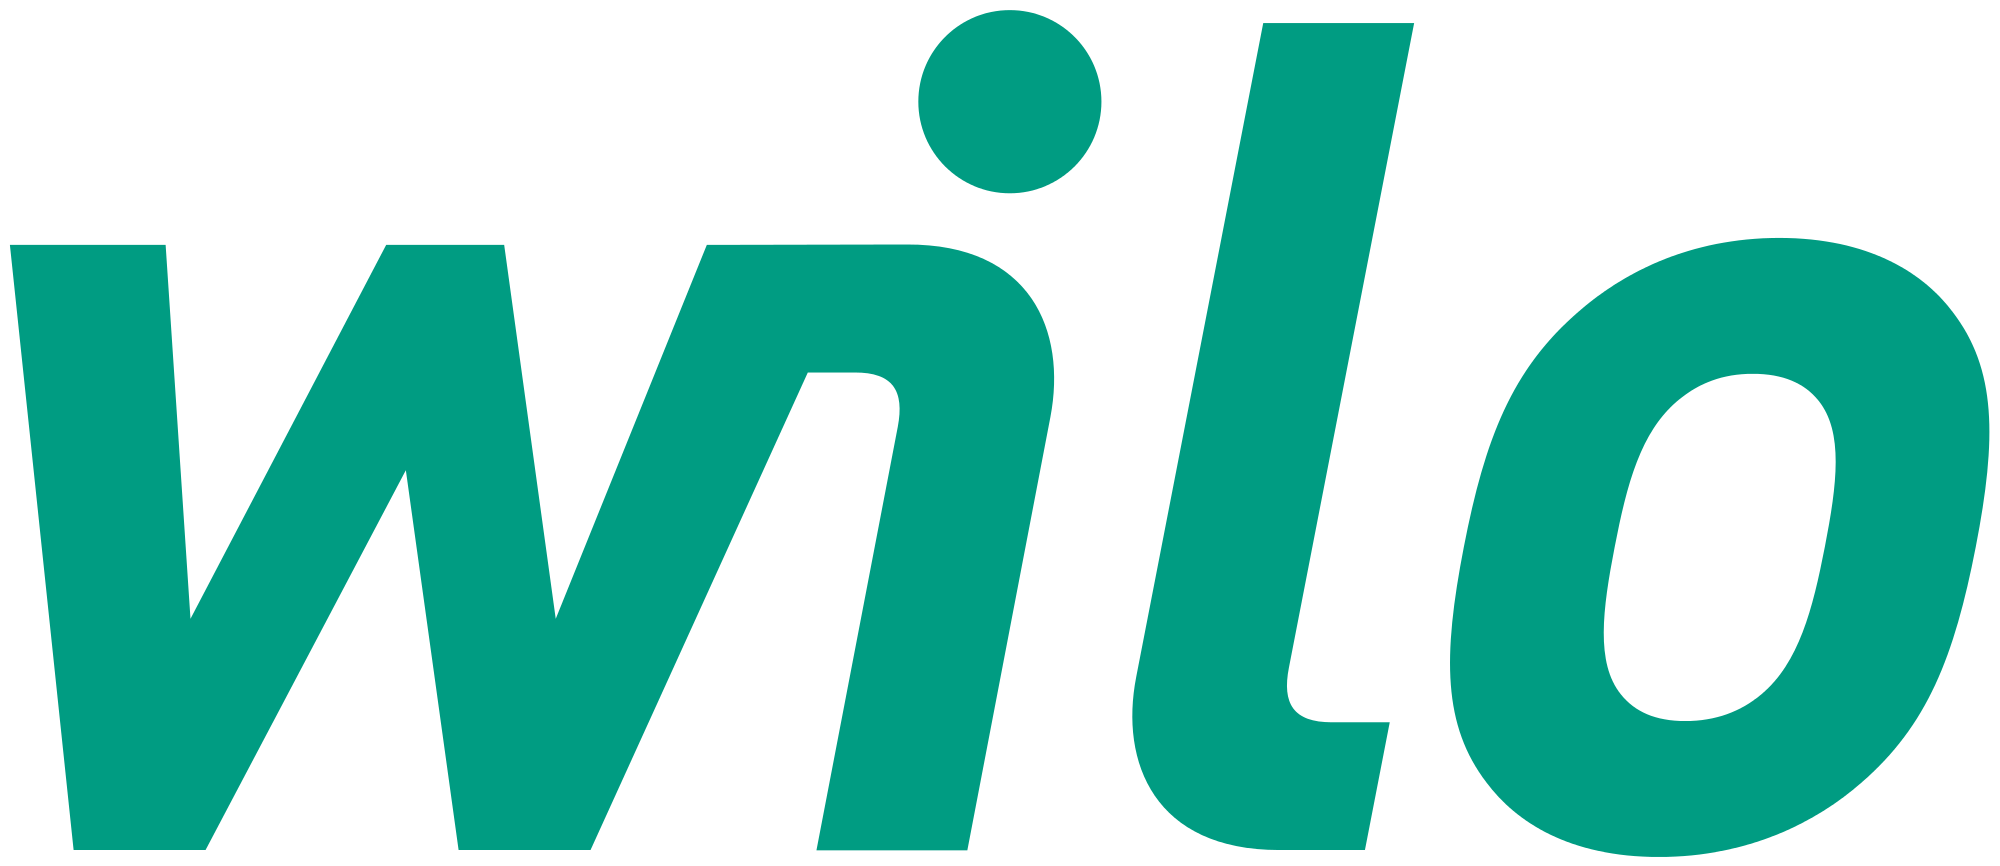 1051-Wilo-Finland-logo